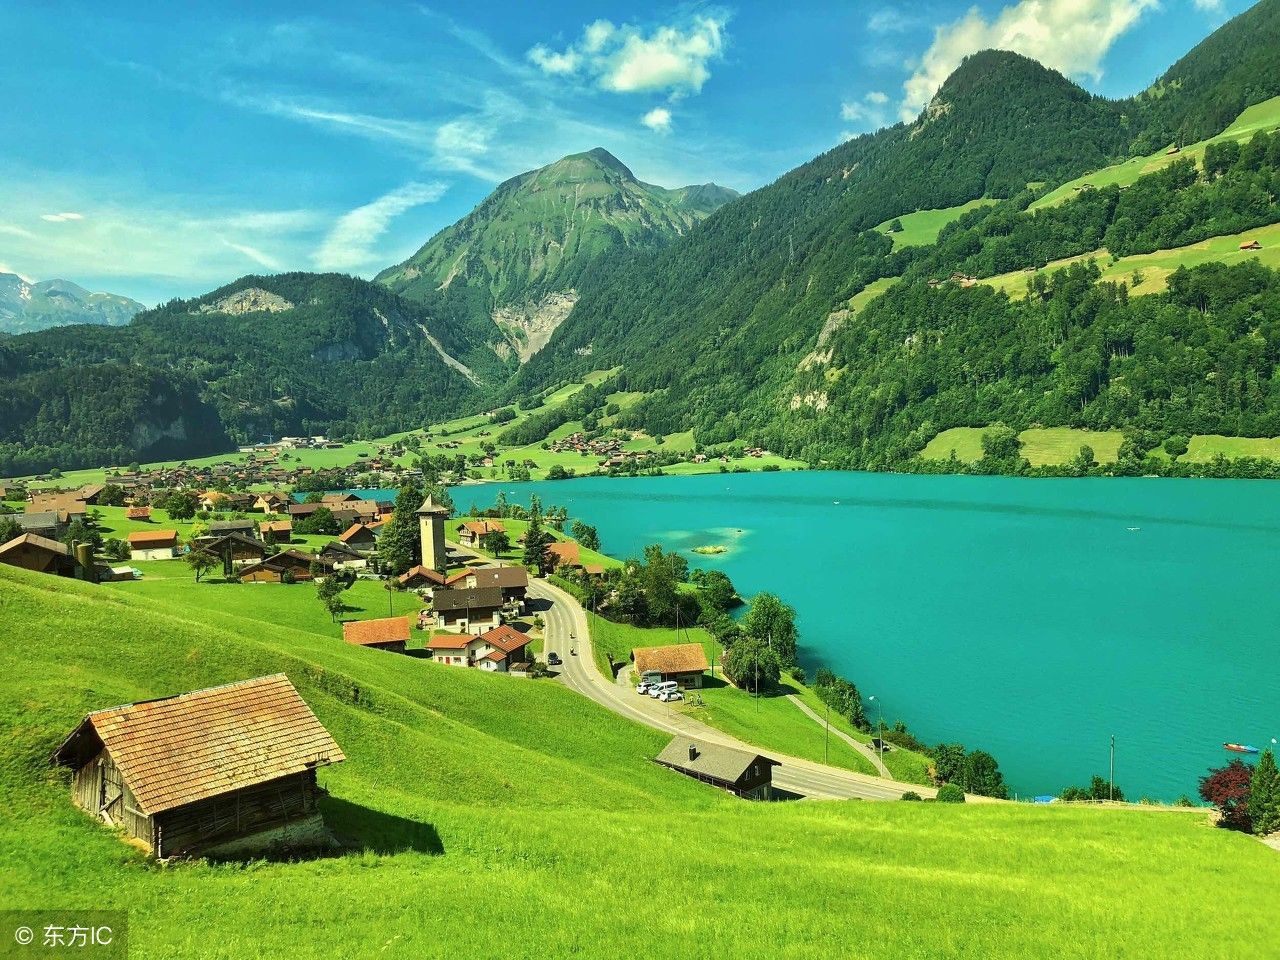 瑞士被誉为欧洲屋脊,这里的风景特别美丽,带